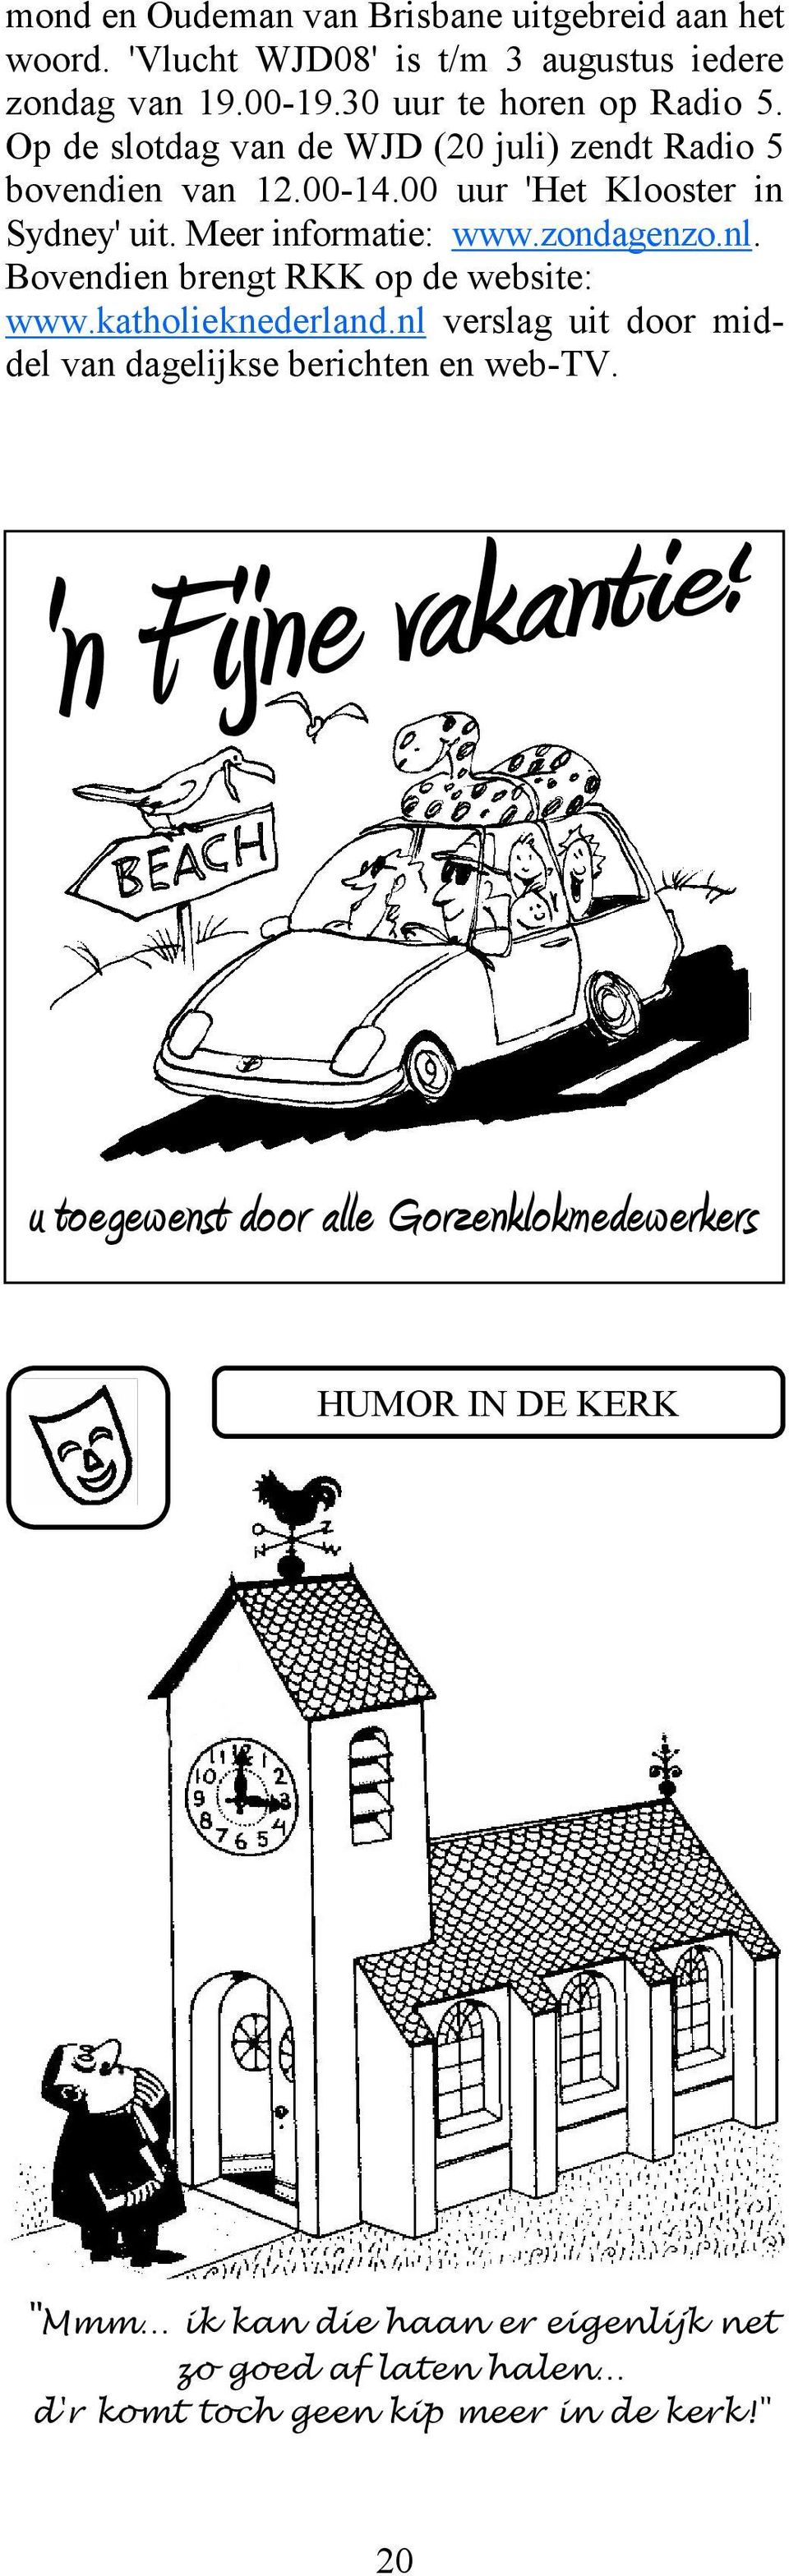 Bovendien brengt RKK op de website: www.katholieknederland.nl verslag uit door middel van dagelijkse berichten en web-tv.